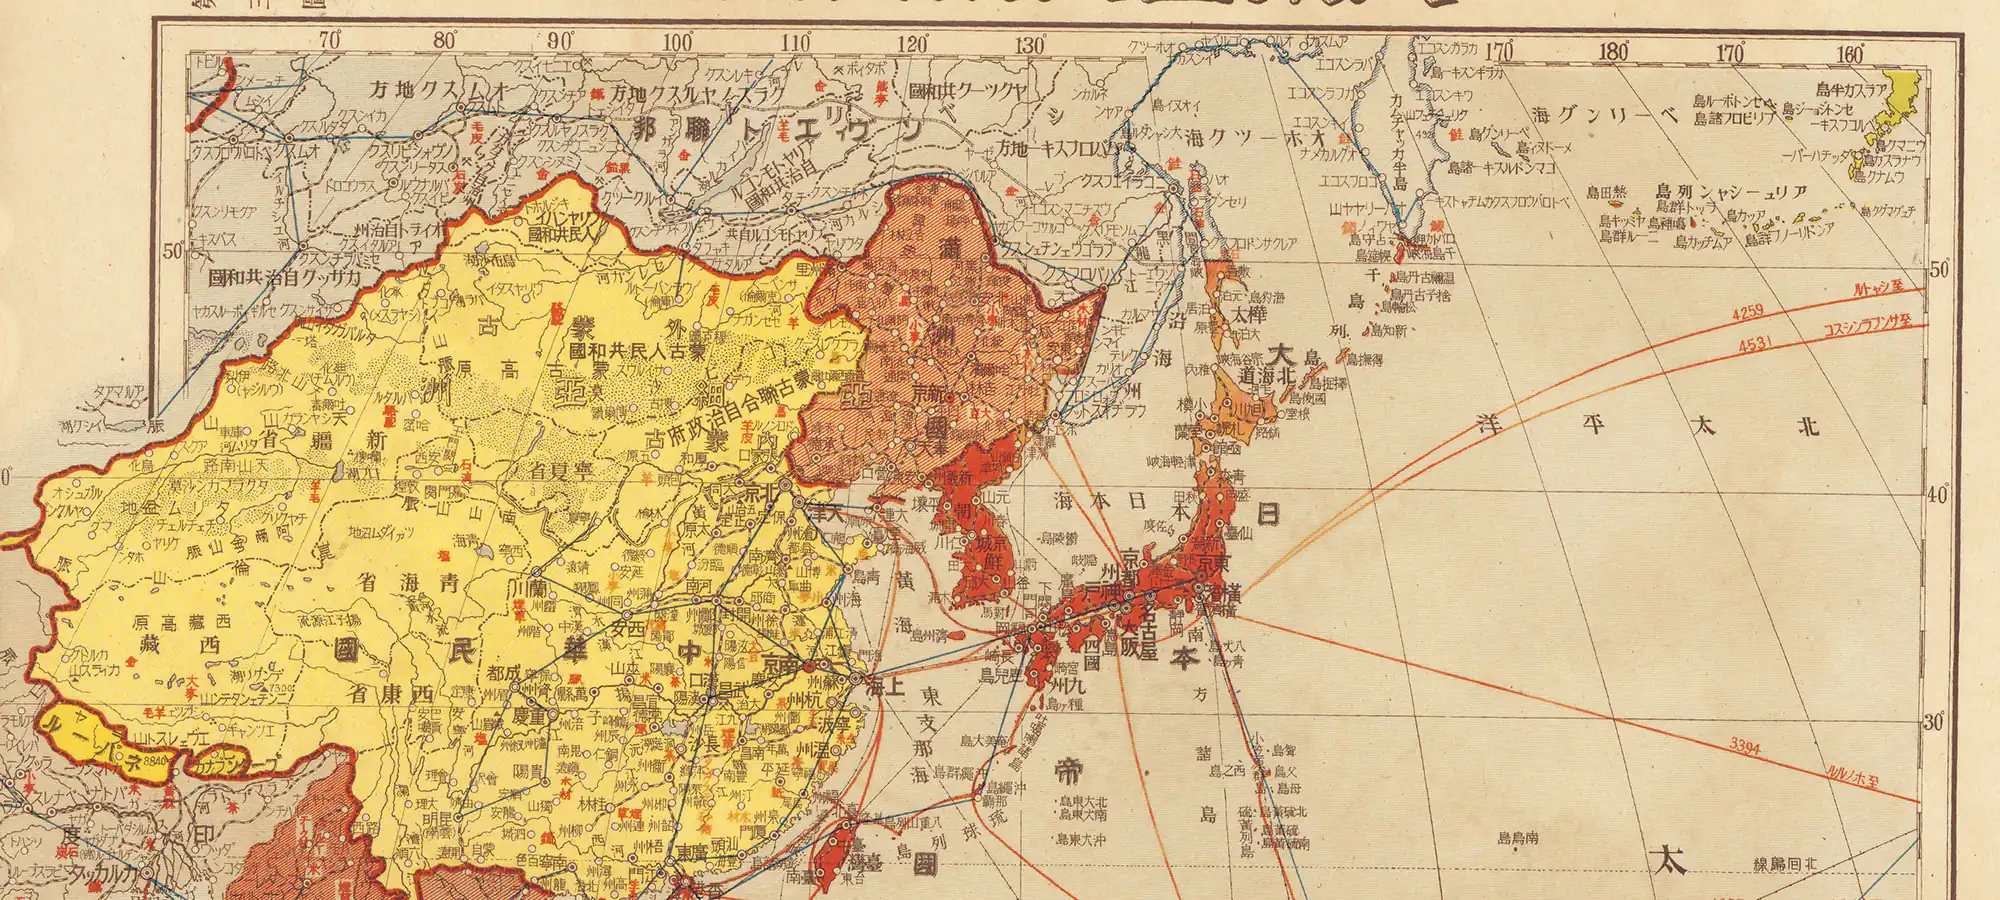 大東亜共栄圏全図 3図 昭和18年(1943) – 満洲帝国分省地図